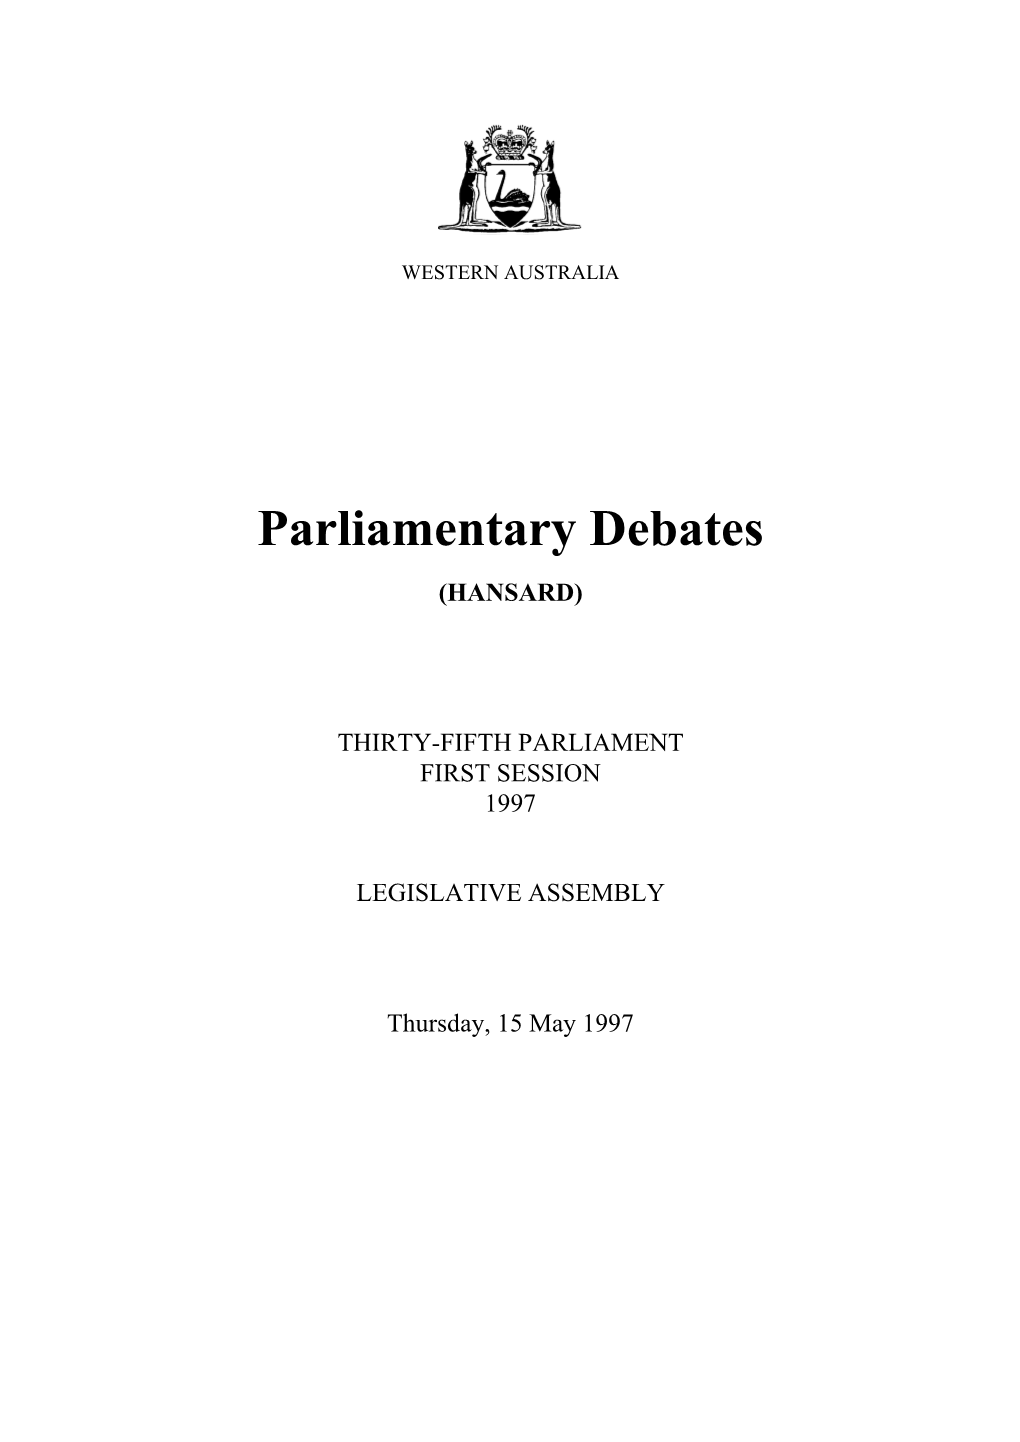 Assembly Thursday, 15 May 1997